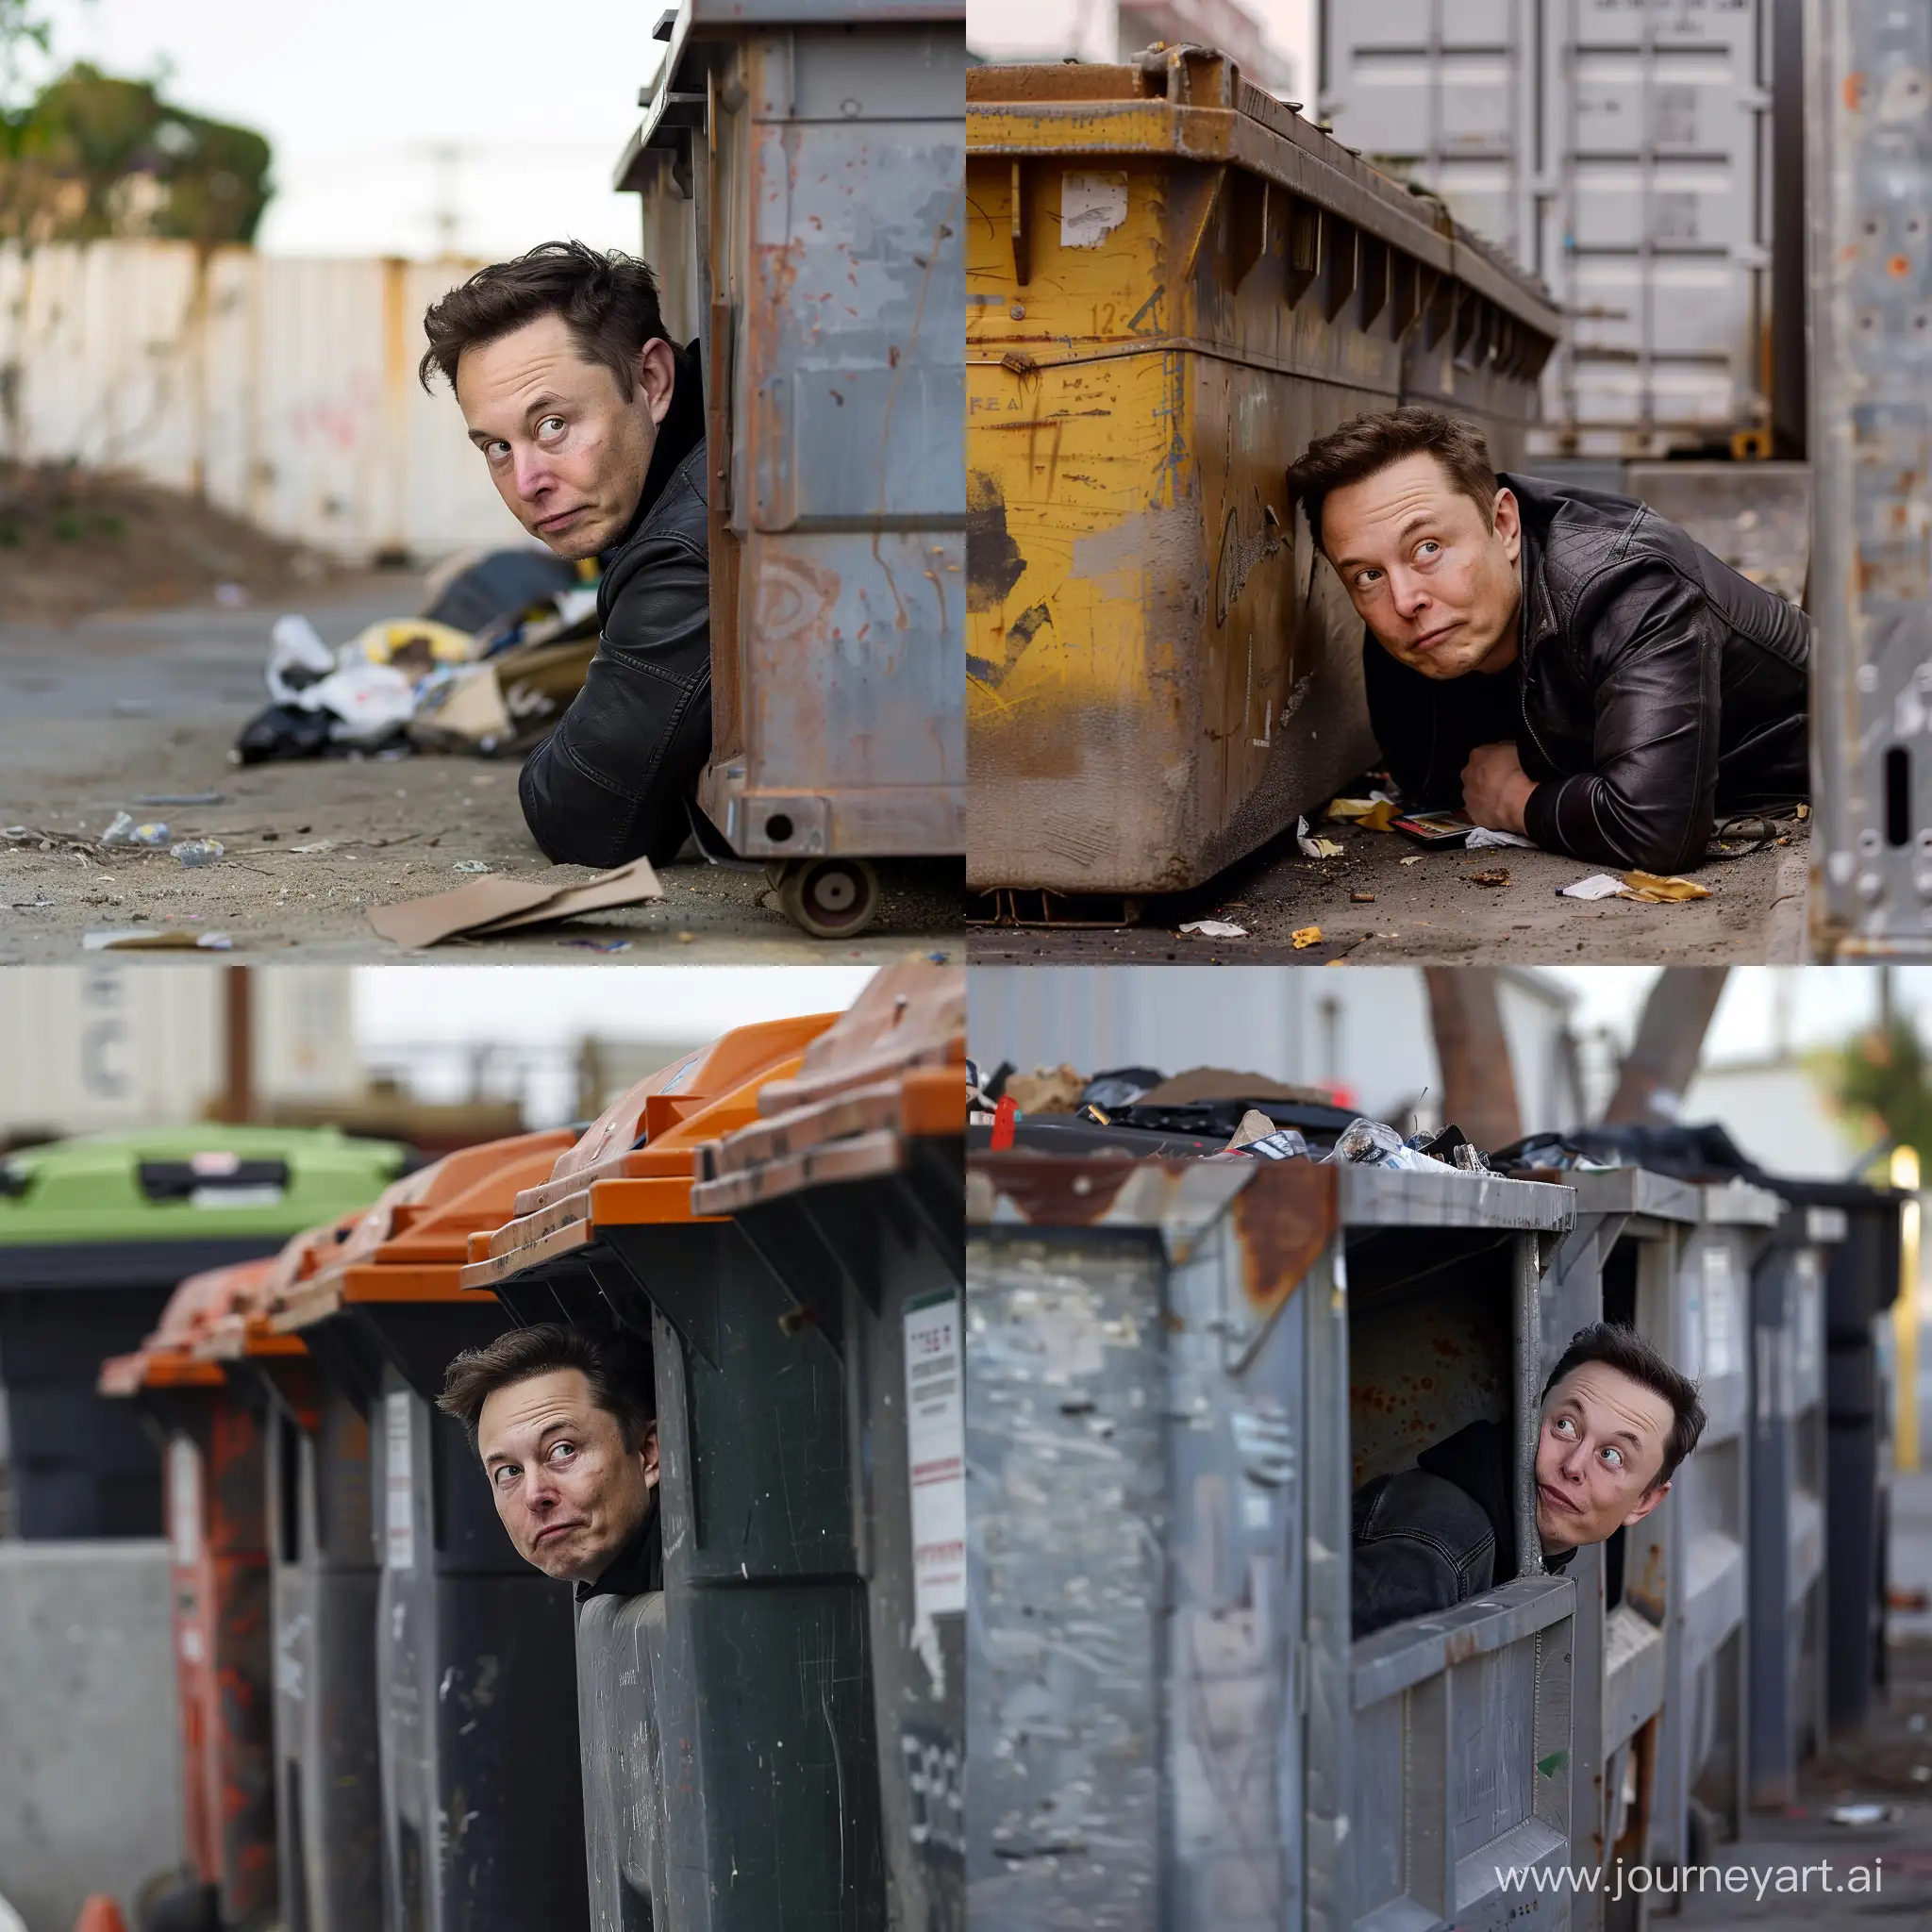 Илон Маск выглядывает из мусорного контейнера возле помойки 